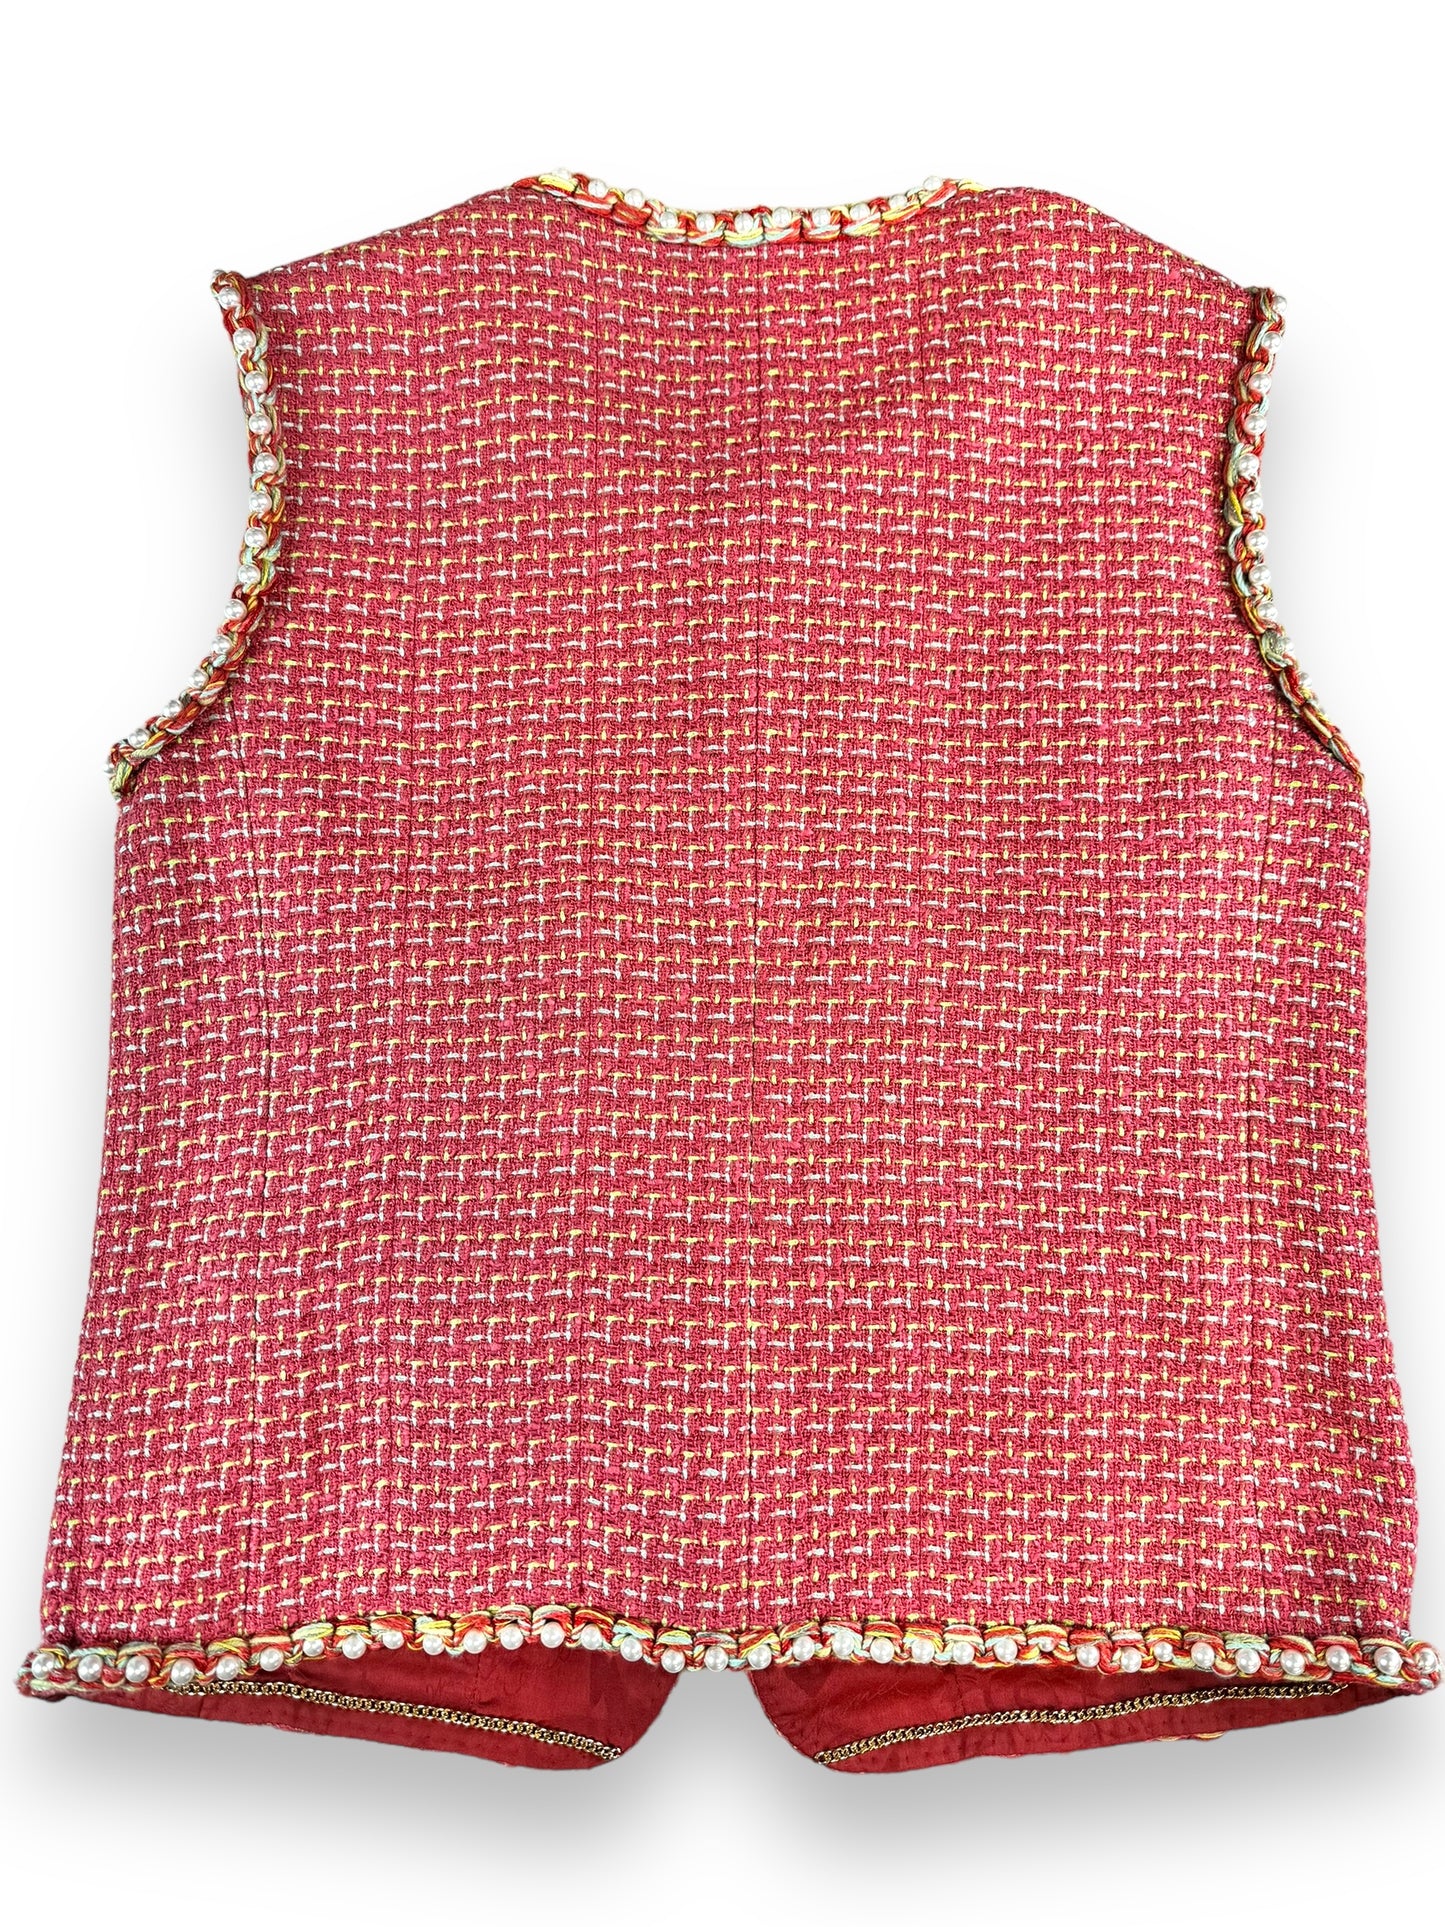 Chanel Tweed + Pearl Pink Vest (P56010V38257)